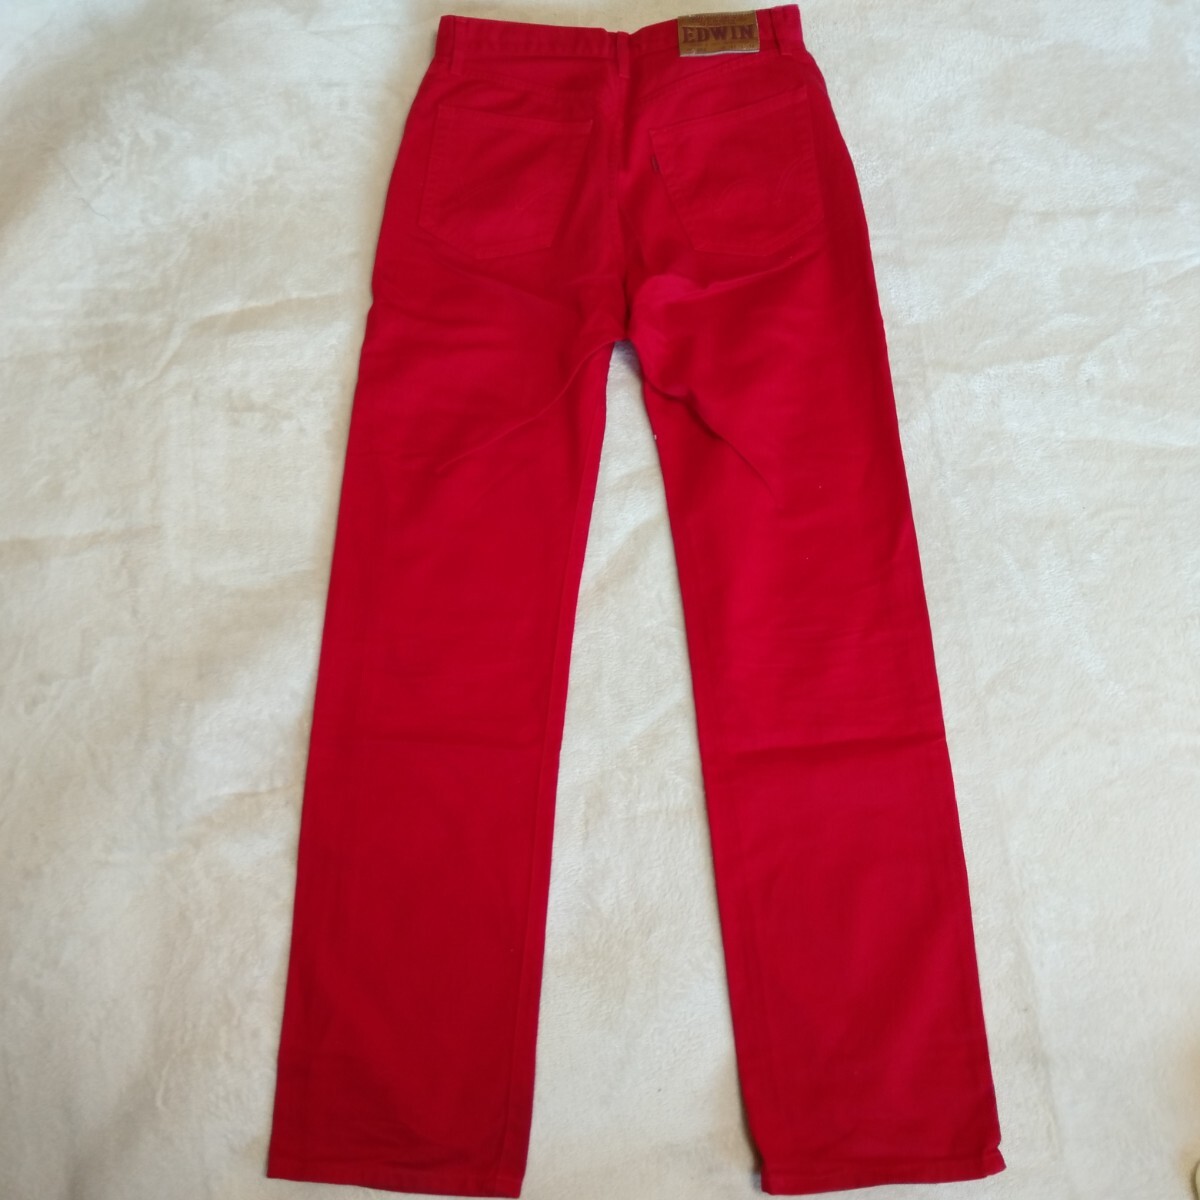 ka121 EDWIN Edwin хлопок 100% размер W31L34 No.503 красный красный брюки цвет джинсы европейская одежда 